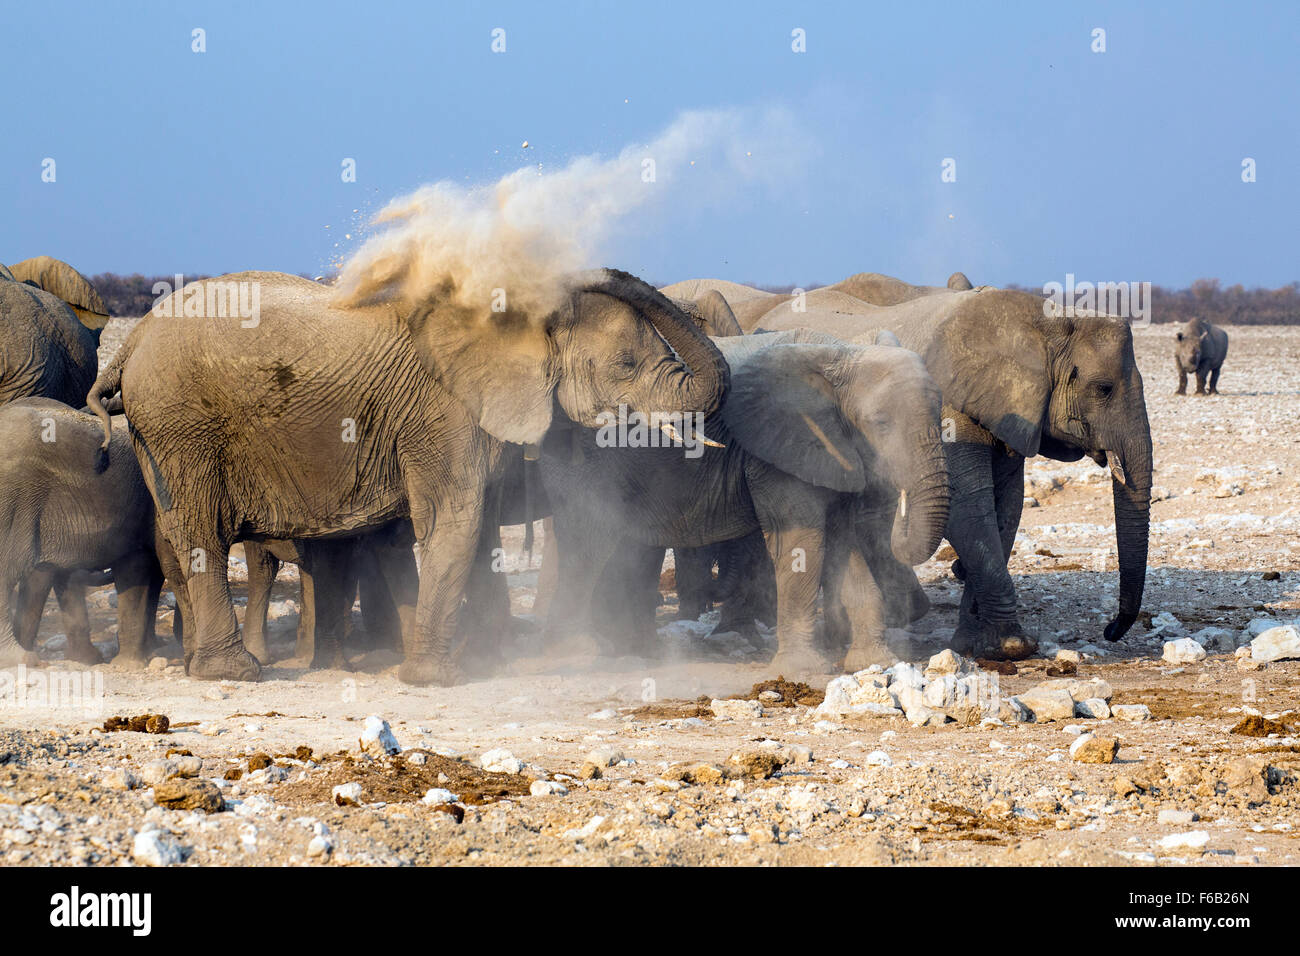 African savanna elephants dusting, Etosha National Park, Namibia, Africa Stock Photo